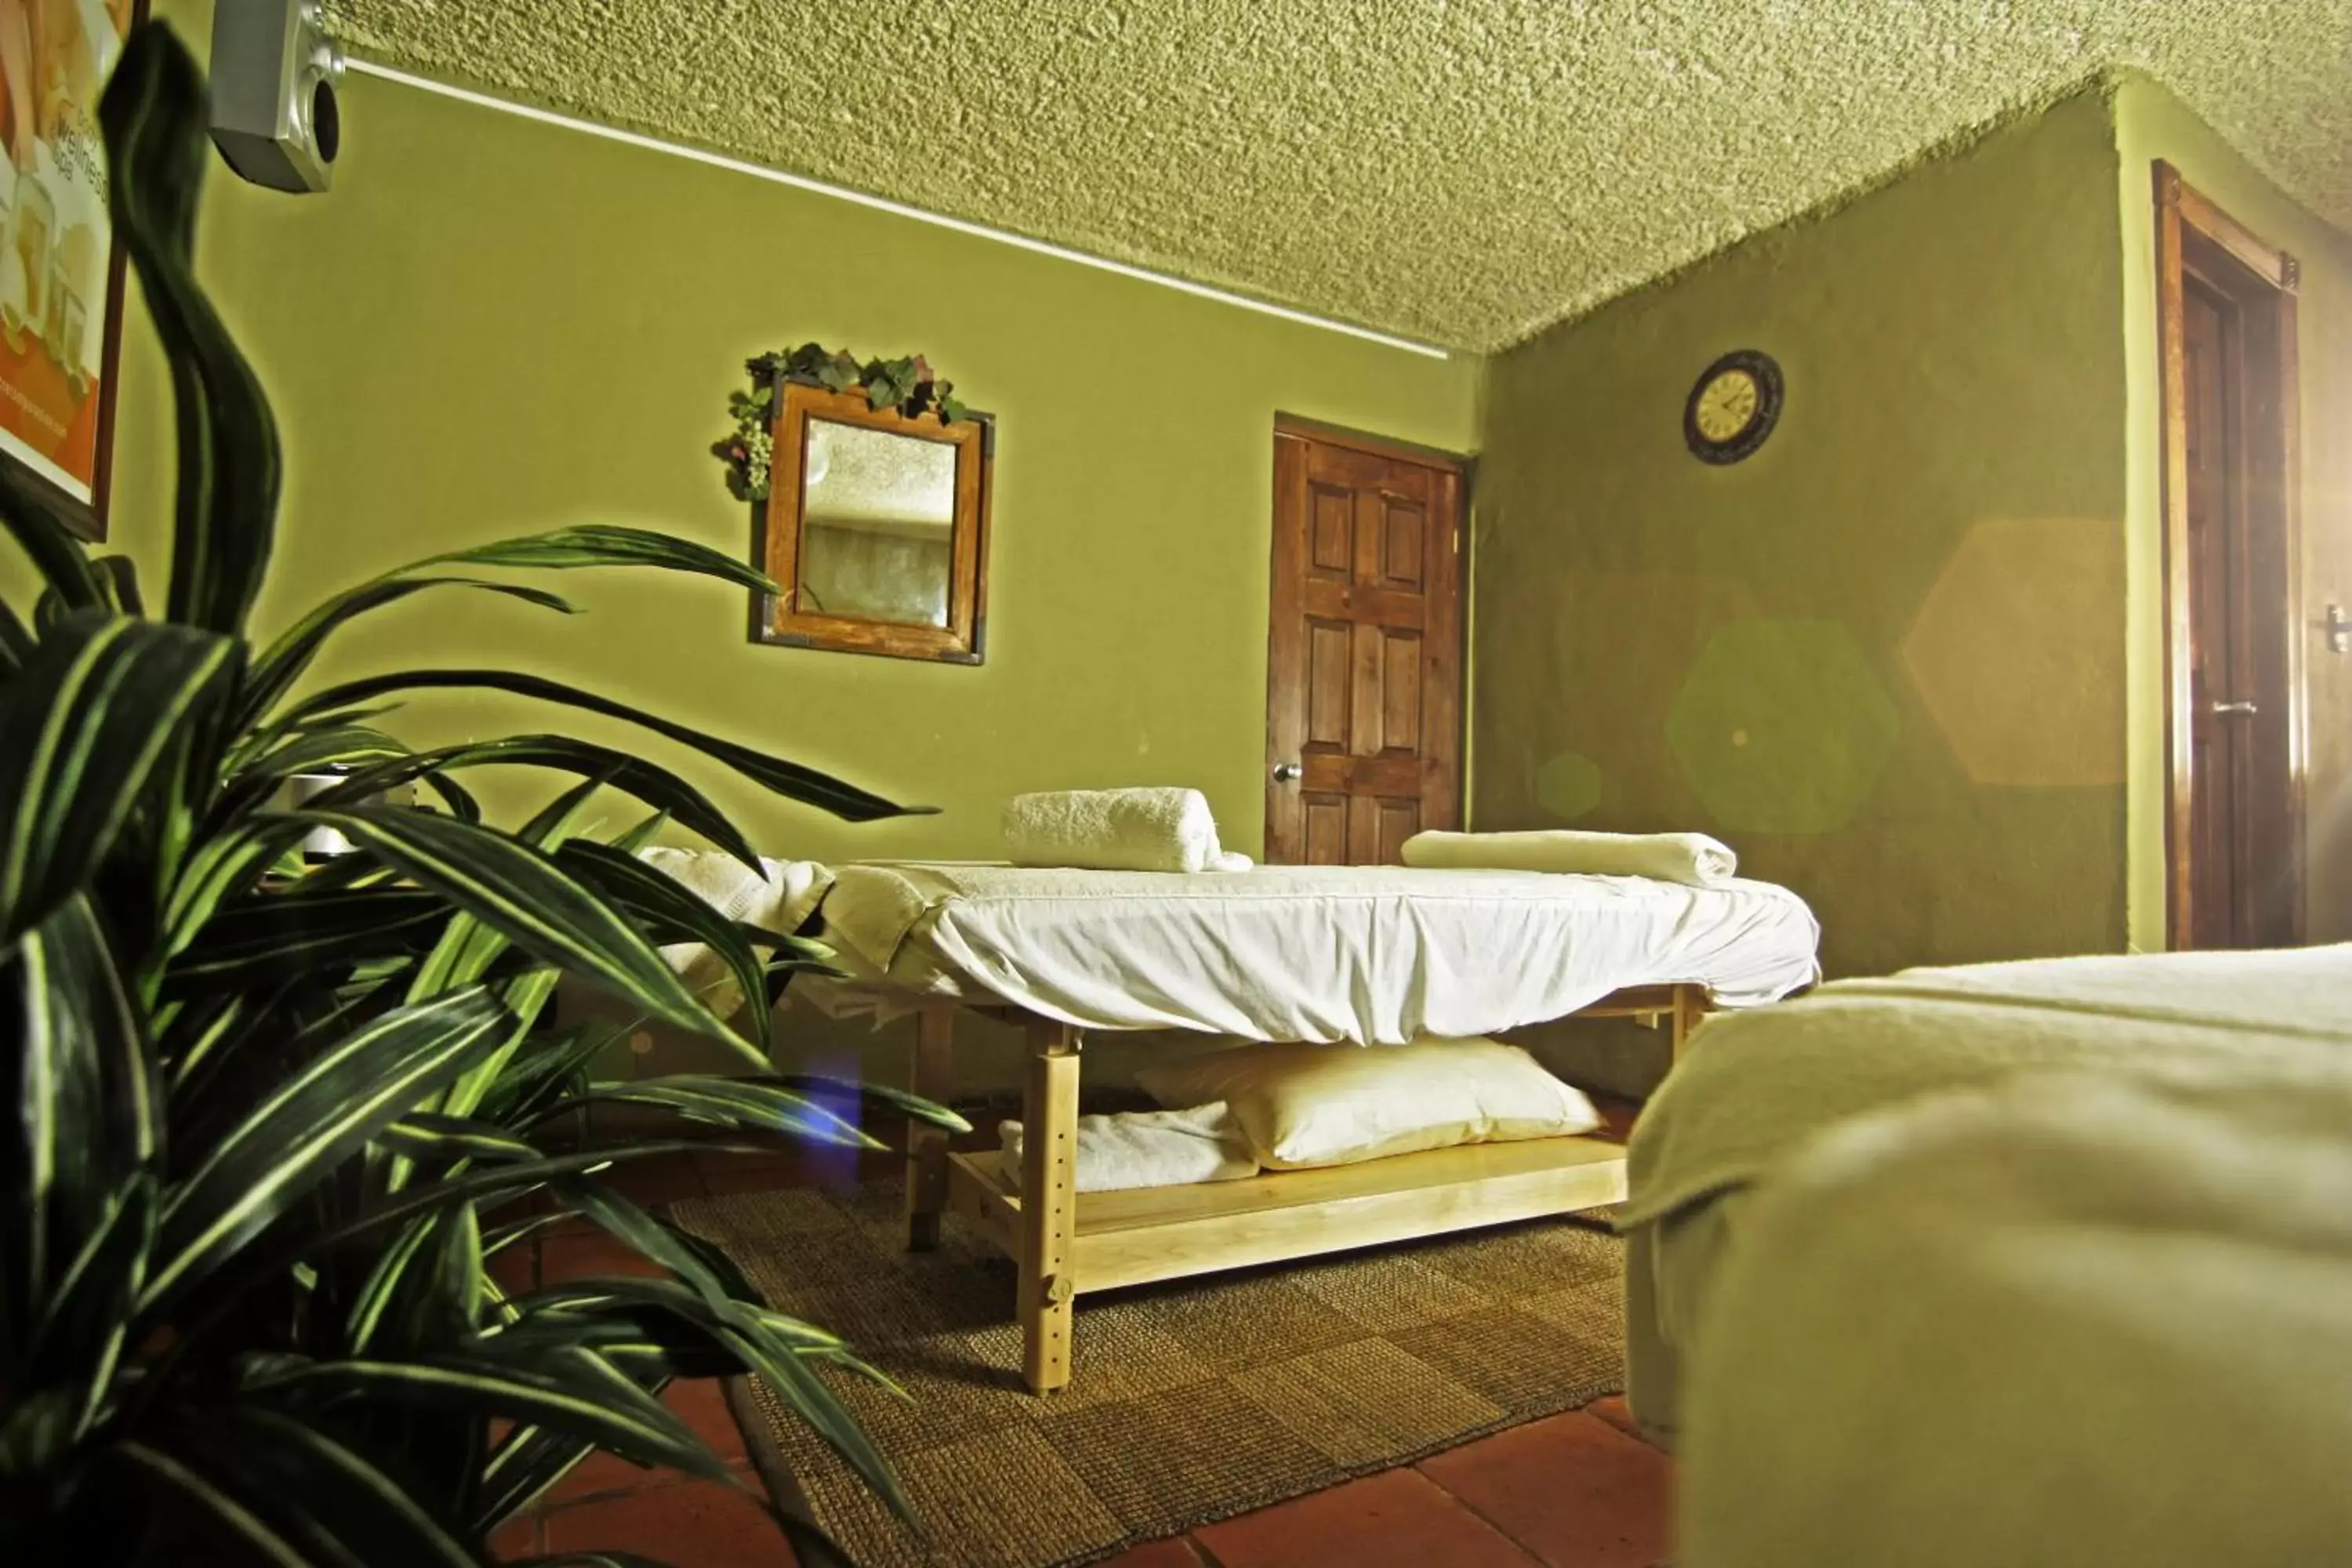 Spa and wellness centre/facilities in Puerto Nuevo Baja Hotel & Villas